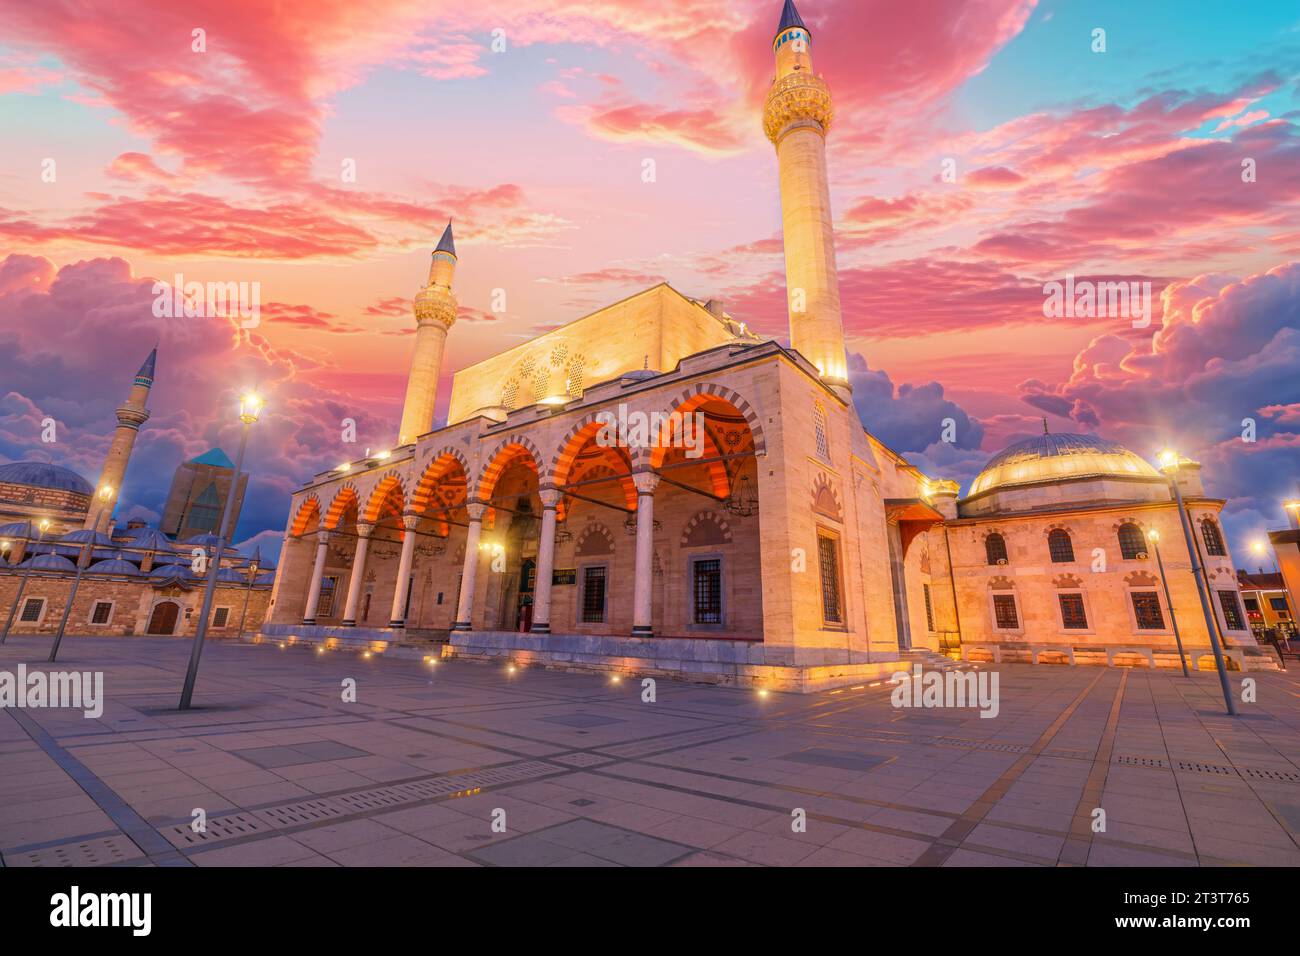 Die Selimiye-Moschee in Konya, Türkei, ist in den warmen Farbtönen des Sonnenuntergangs getaucht, mit ihren eleganten Kuppeln und Minaretten, die sich vor dem verblassenden Himmel abheben. Die Ruhe Stockfoto